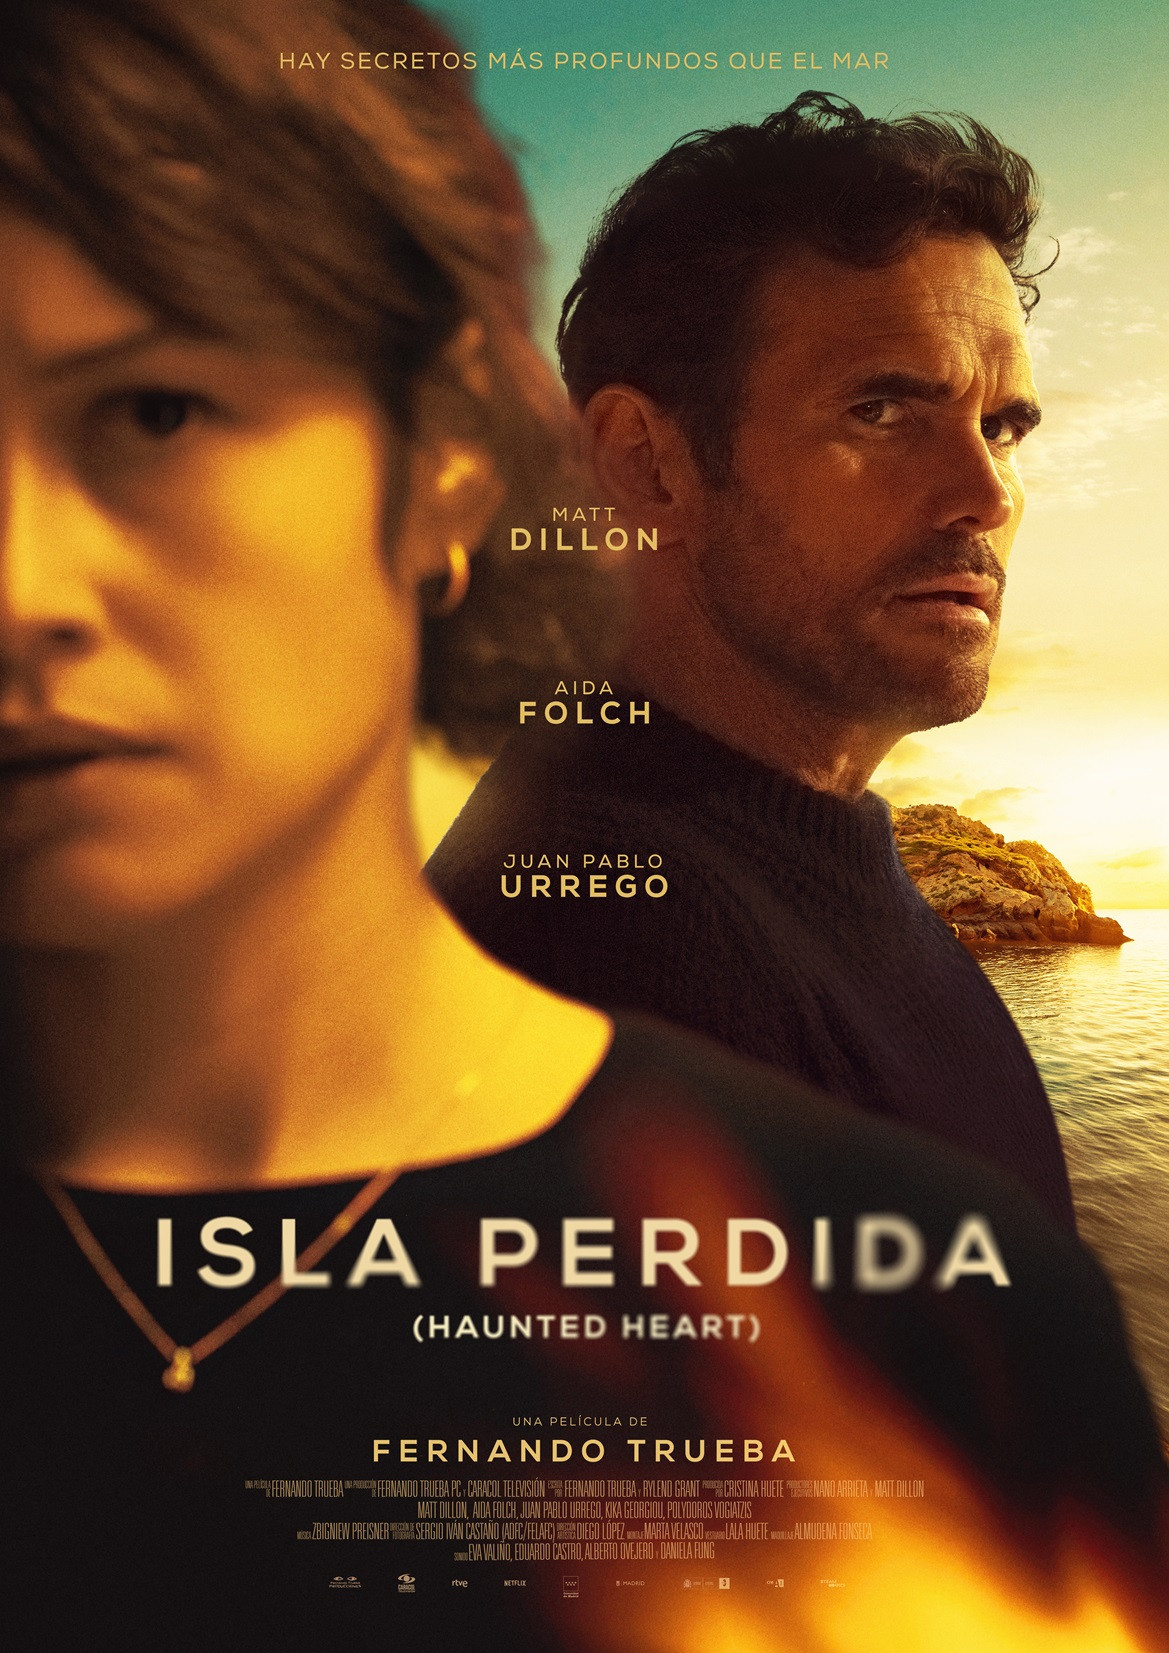  Fernando Trueba inaugurará el Atlàntida Mallorca Film Fest con su nueva película 'Isla perdida' 